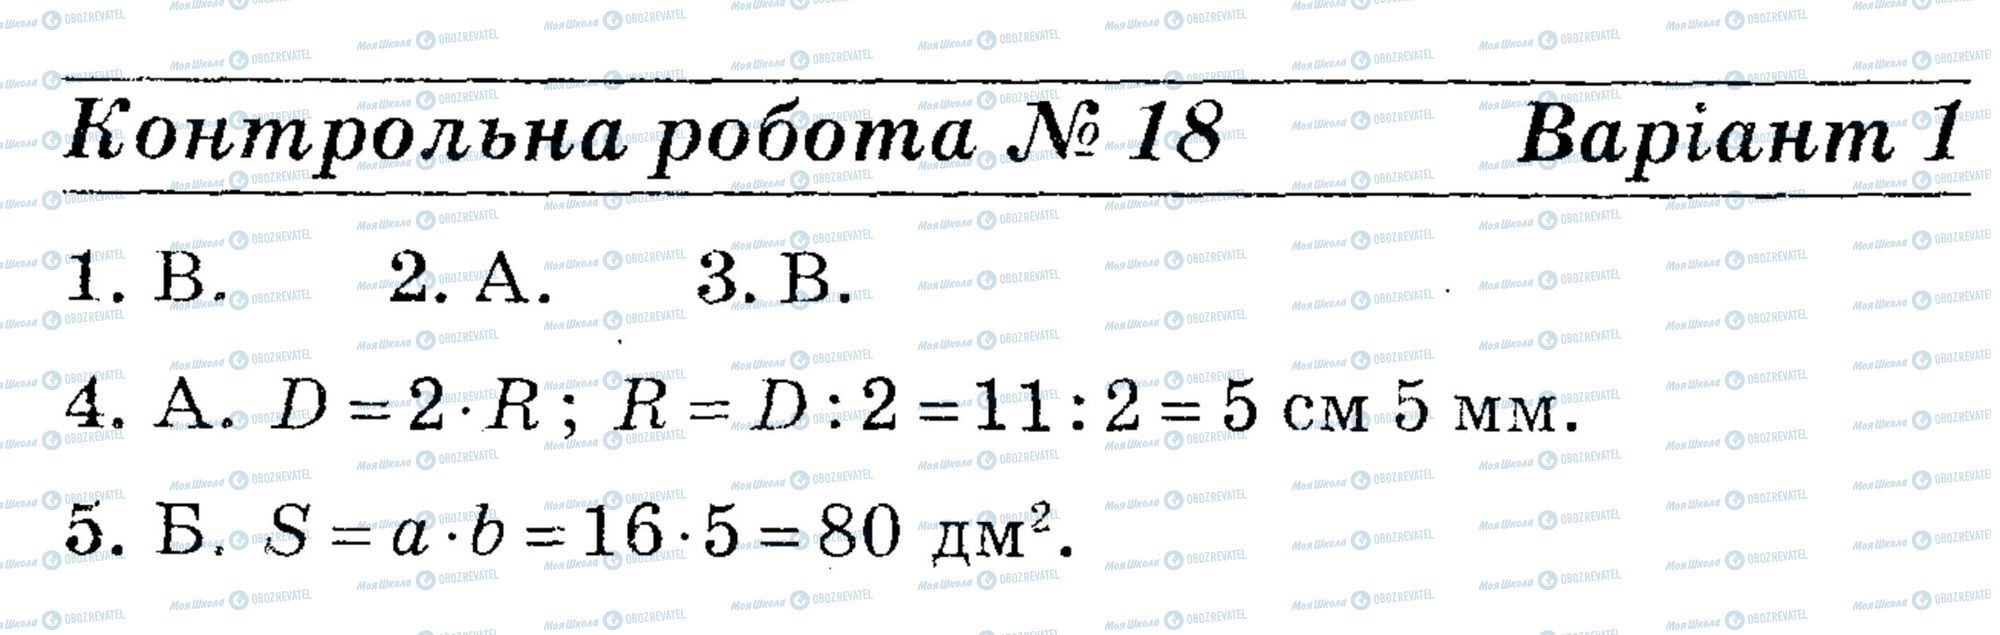 ДПА Математика 4 класс страница math-DPA-2013-4kl-K18-5